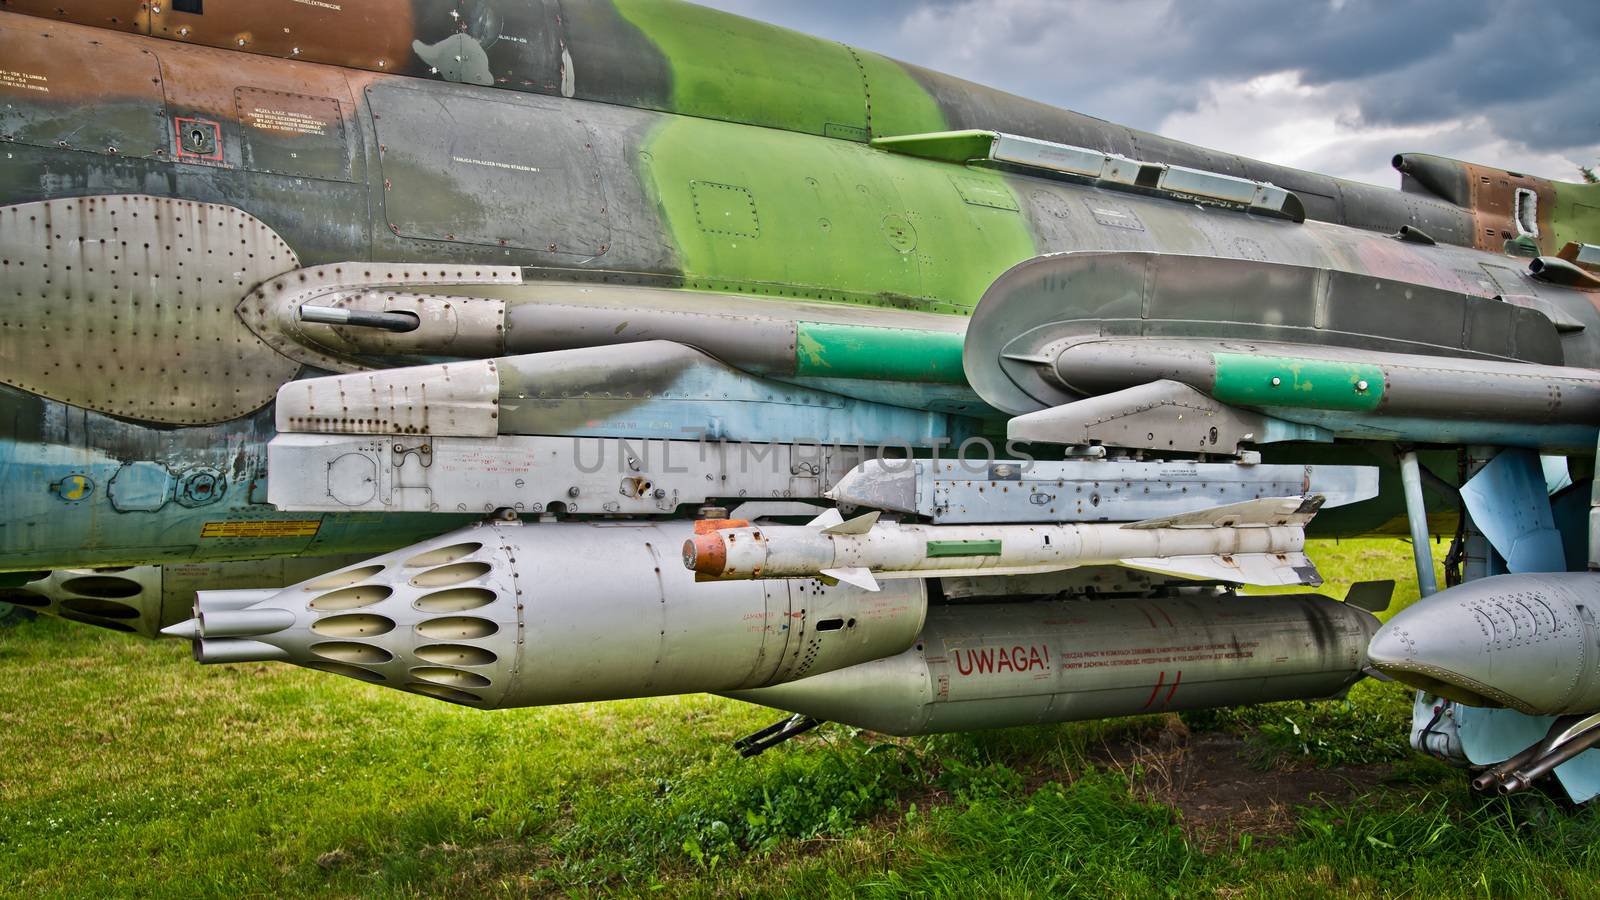 Armament of russian jet plane by furzyk73